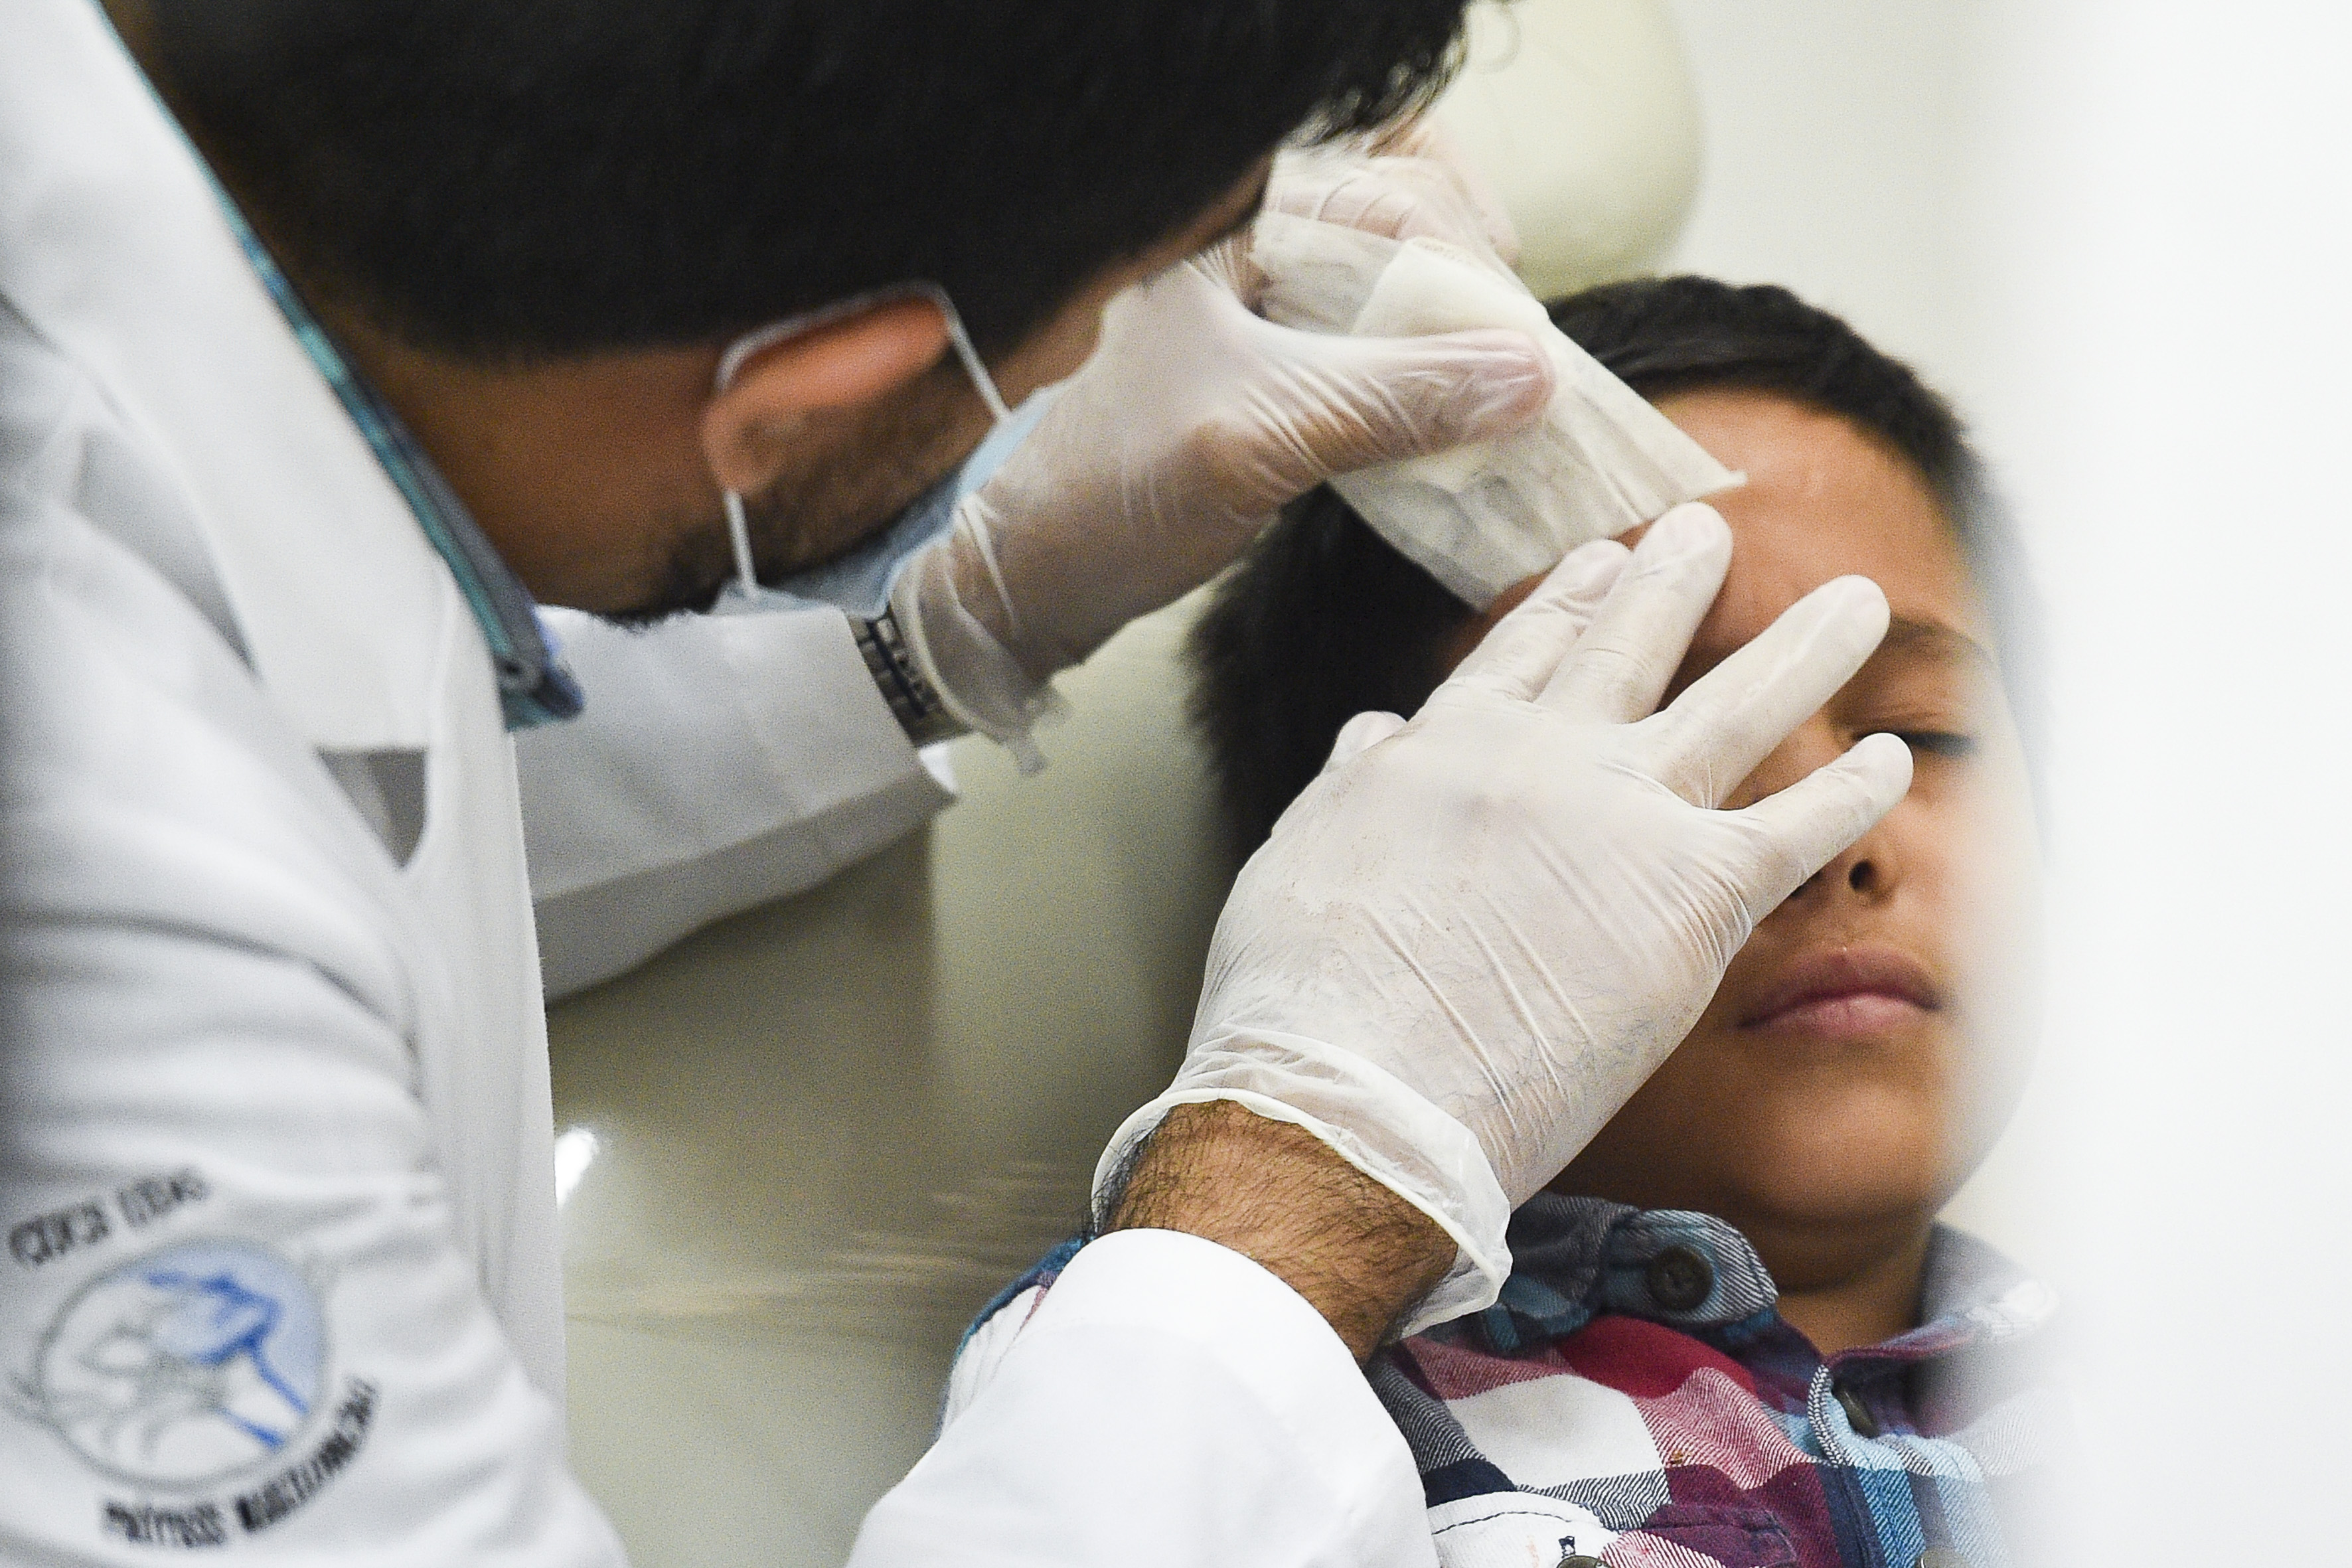 Dr revisando a paciente que perdió su ojo derecho